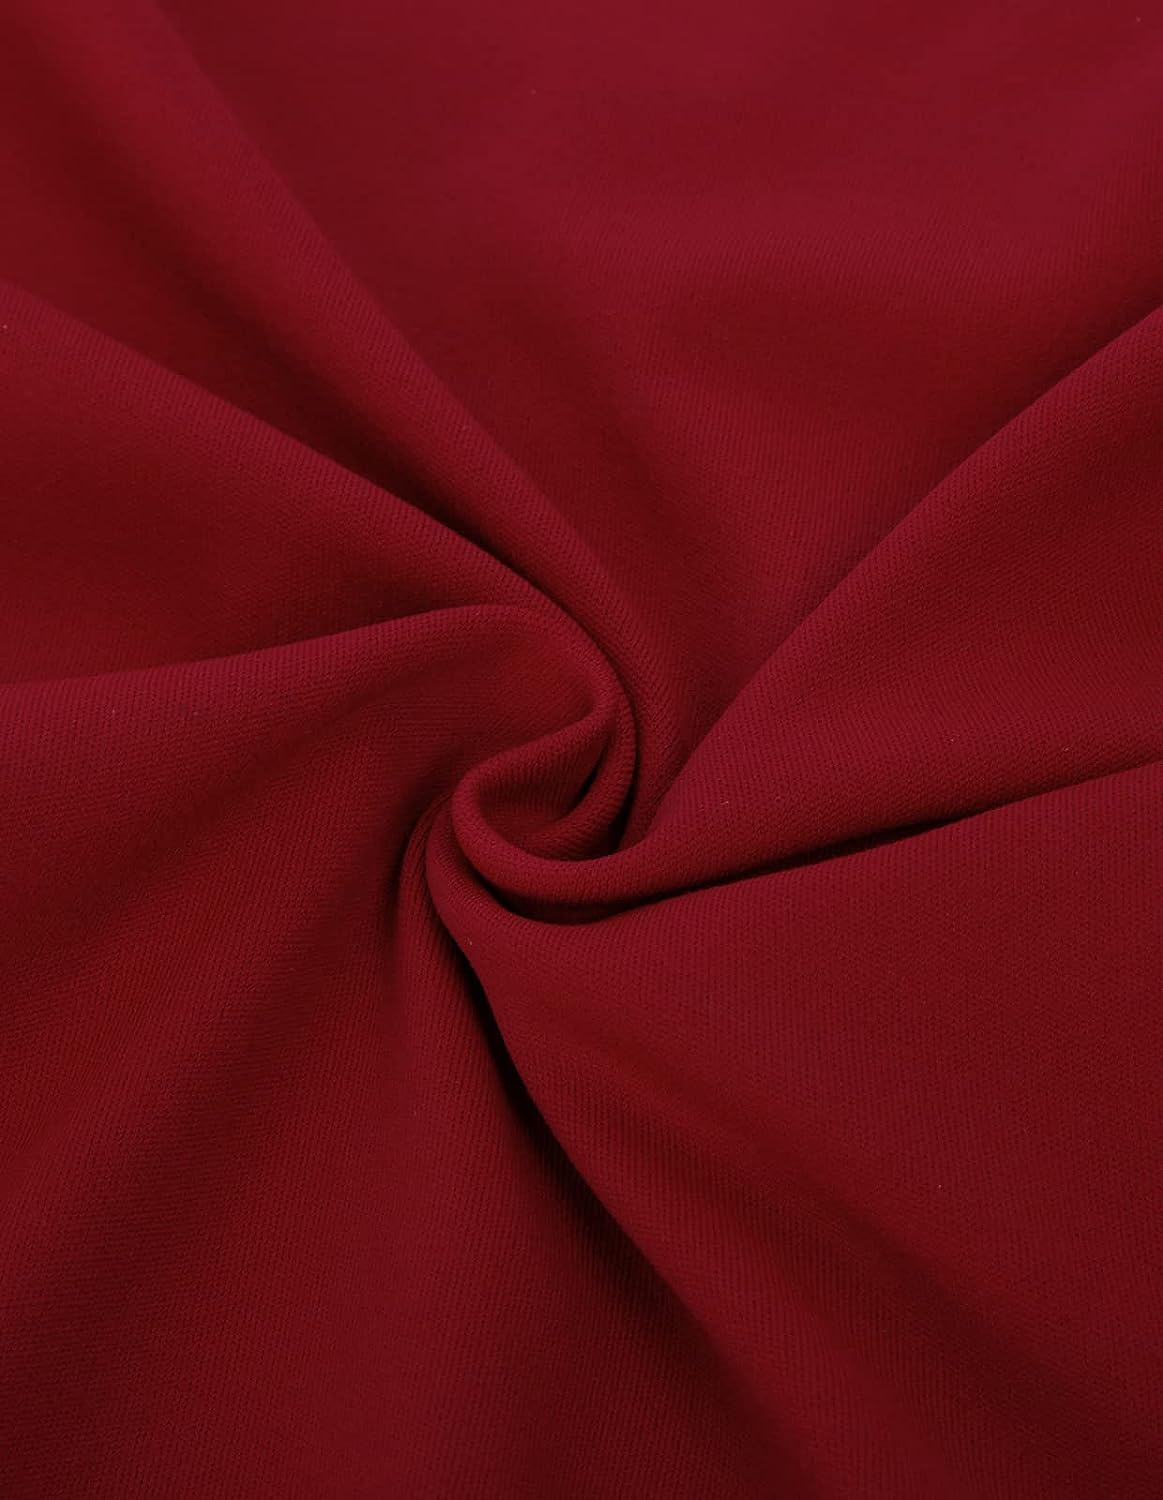 Scarlet Darkness Peplum Tops for Women Summer Puff Sleeve Renaissance Shirt Blouse